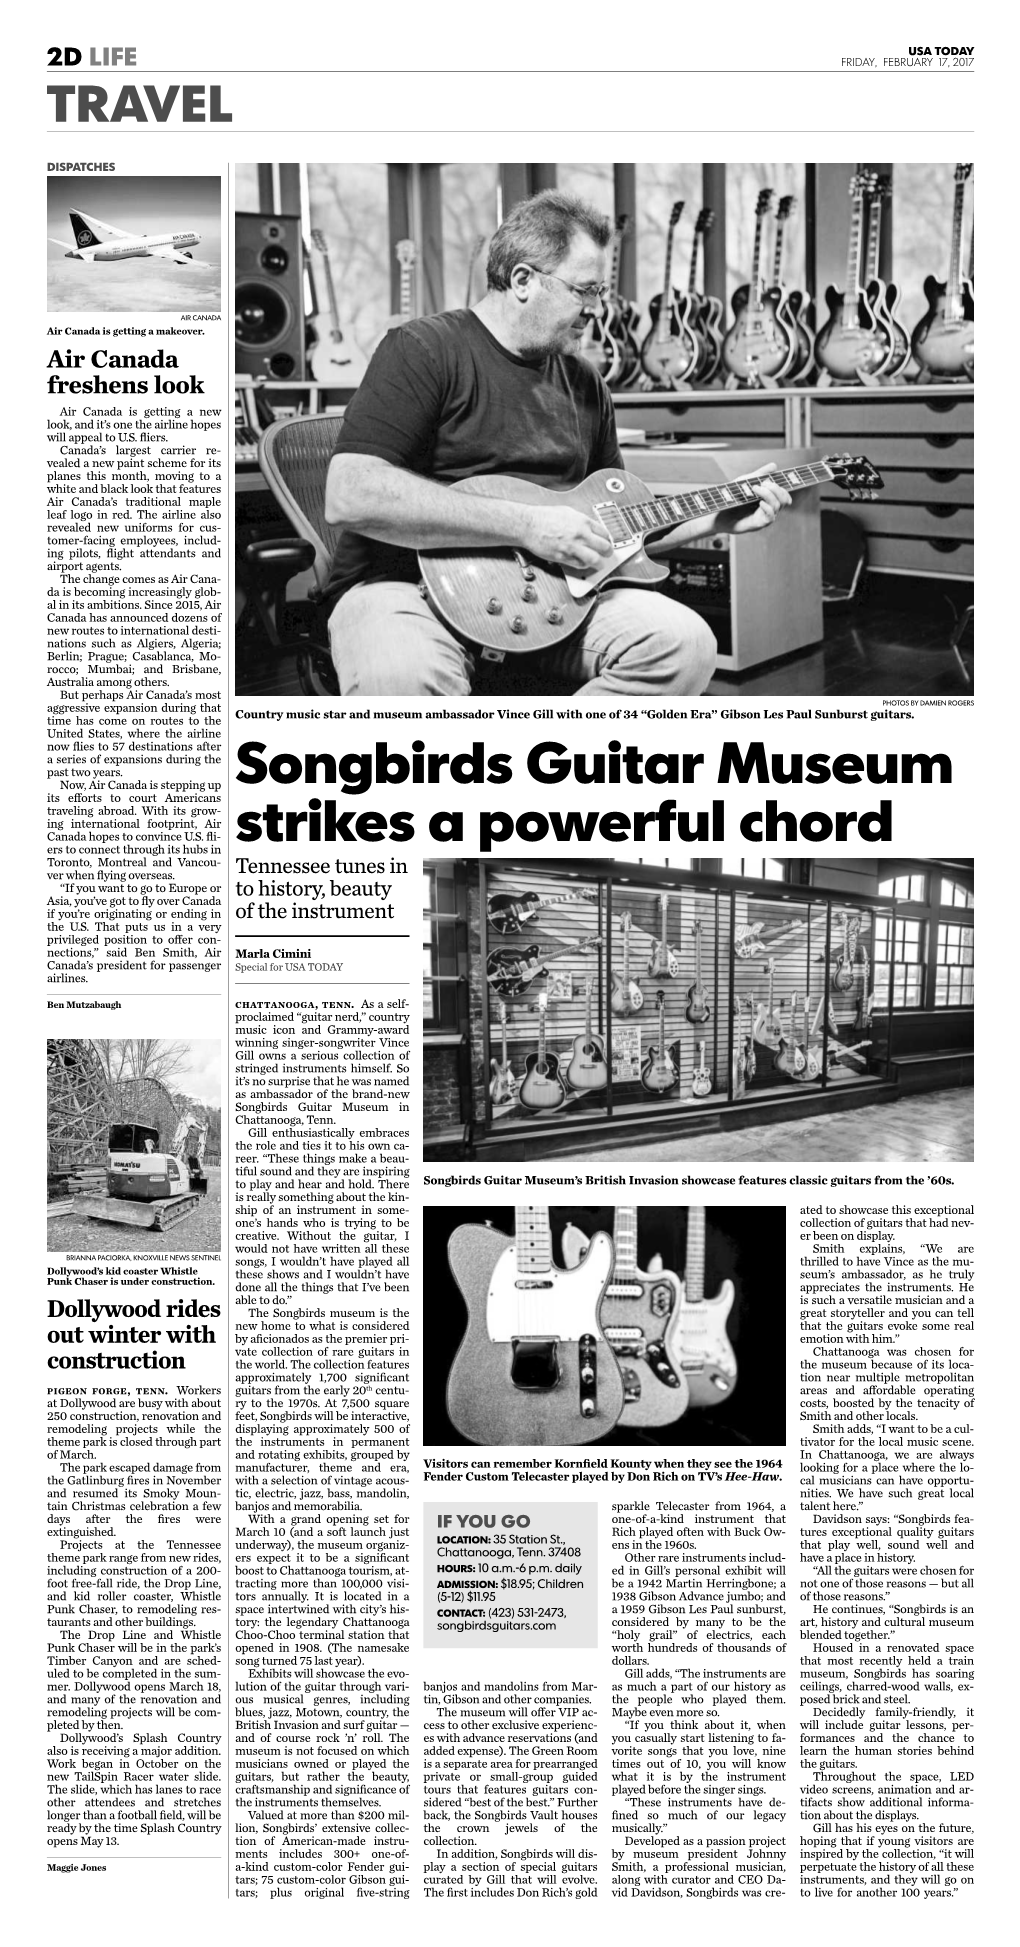 Songbirds Guitar Museum Strikes a Powerful Chord